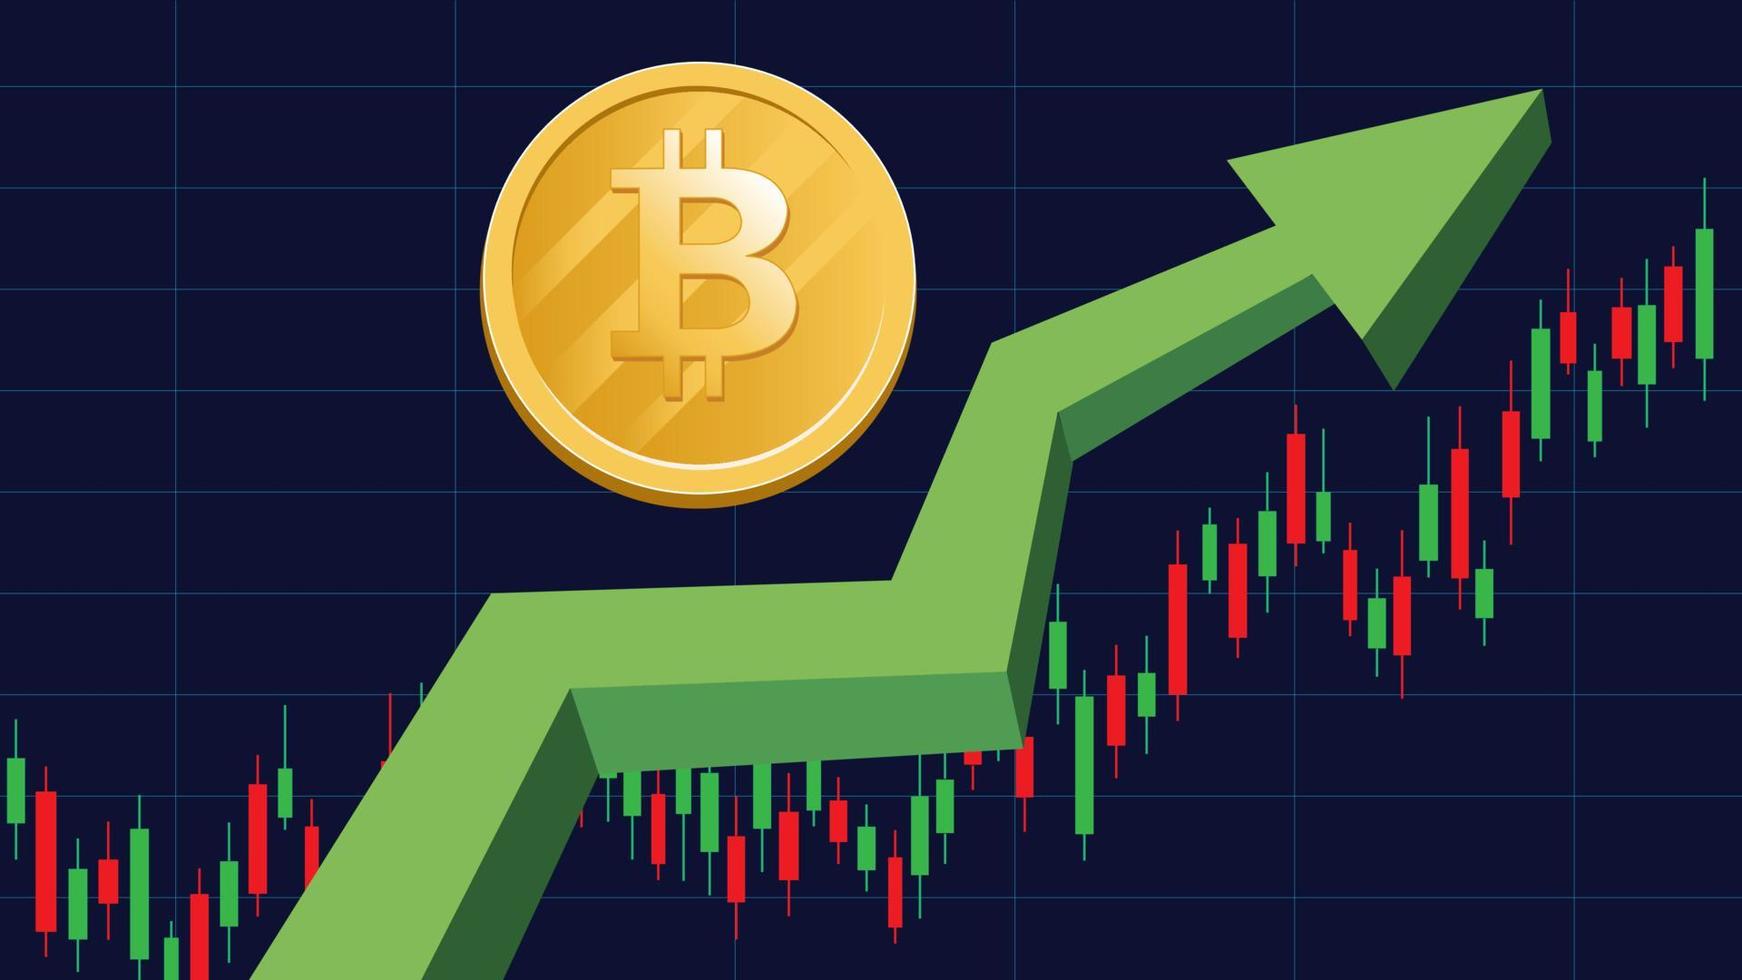 valuta bitcoin in aumento. bitcoin sull'illustrazione grafica vettoriale verde